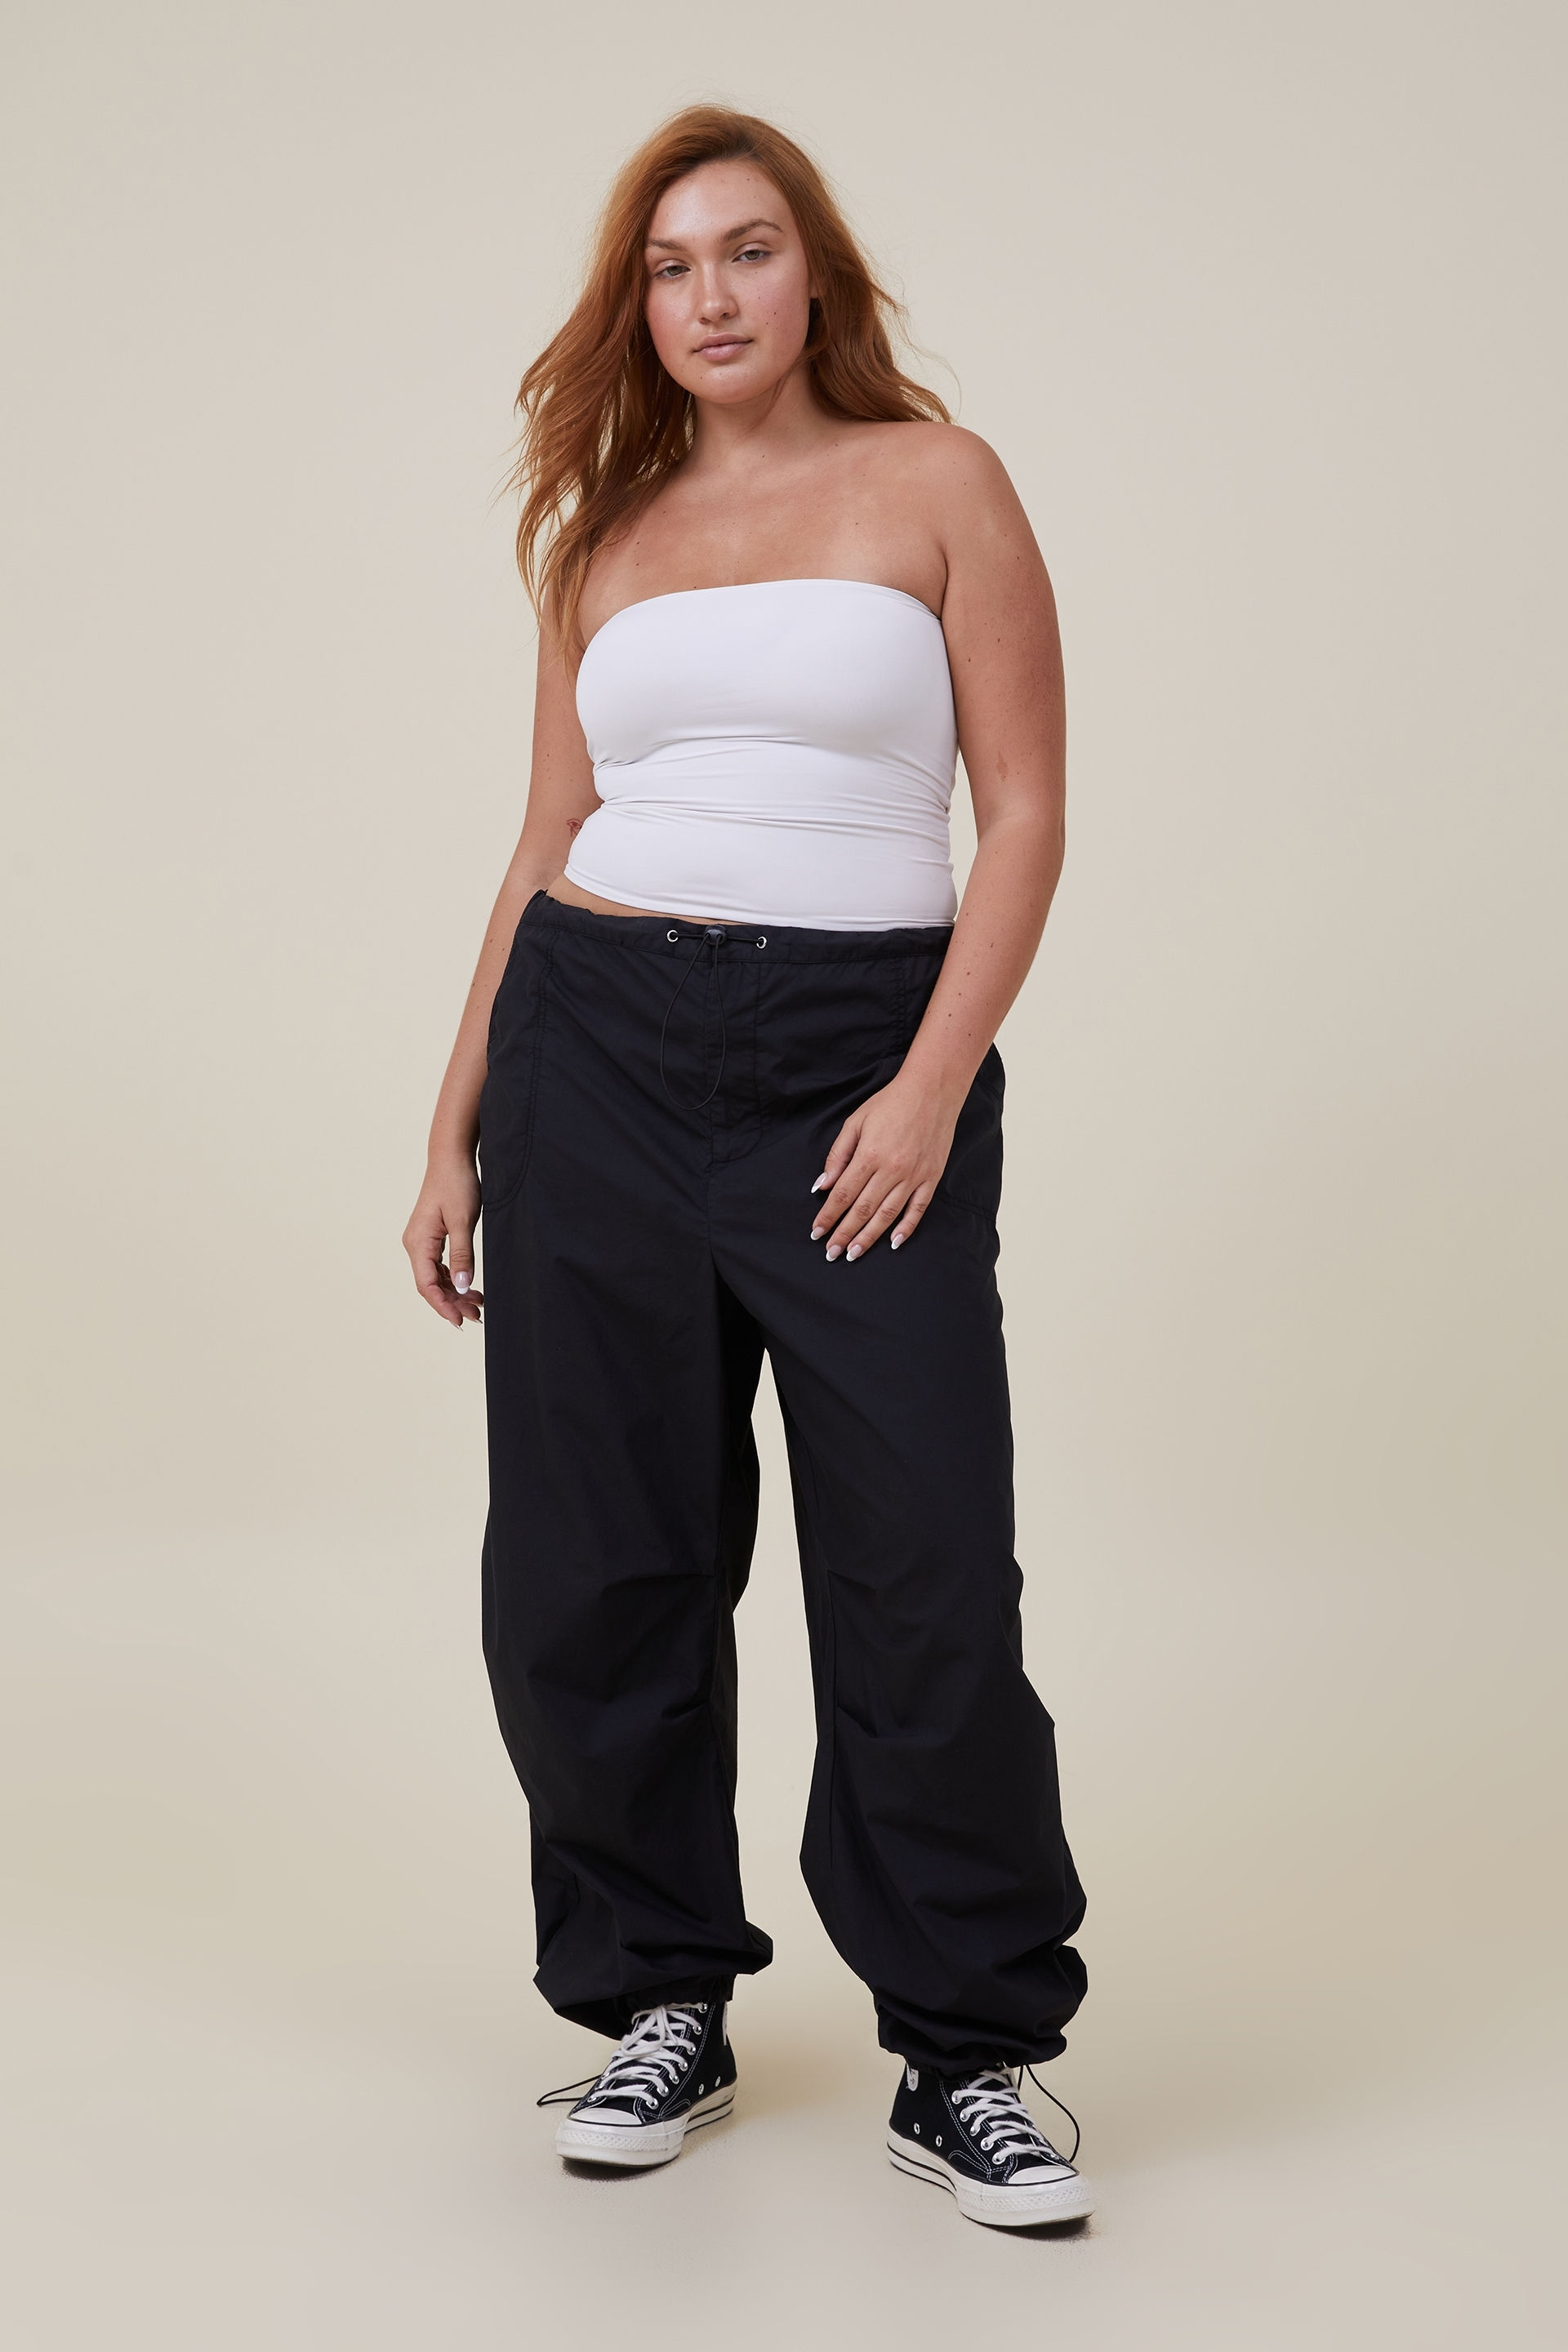 calca jeans feminina jordan - Compre calca jeans feminina jordan